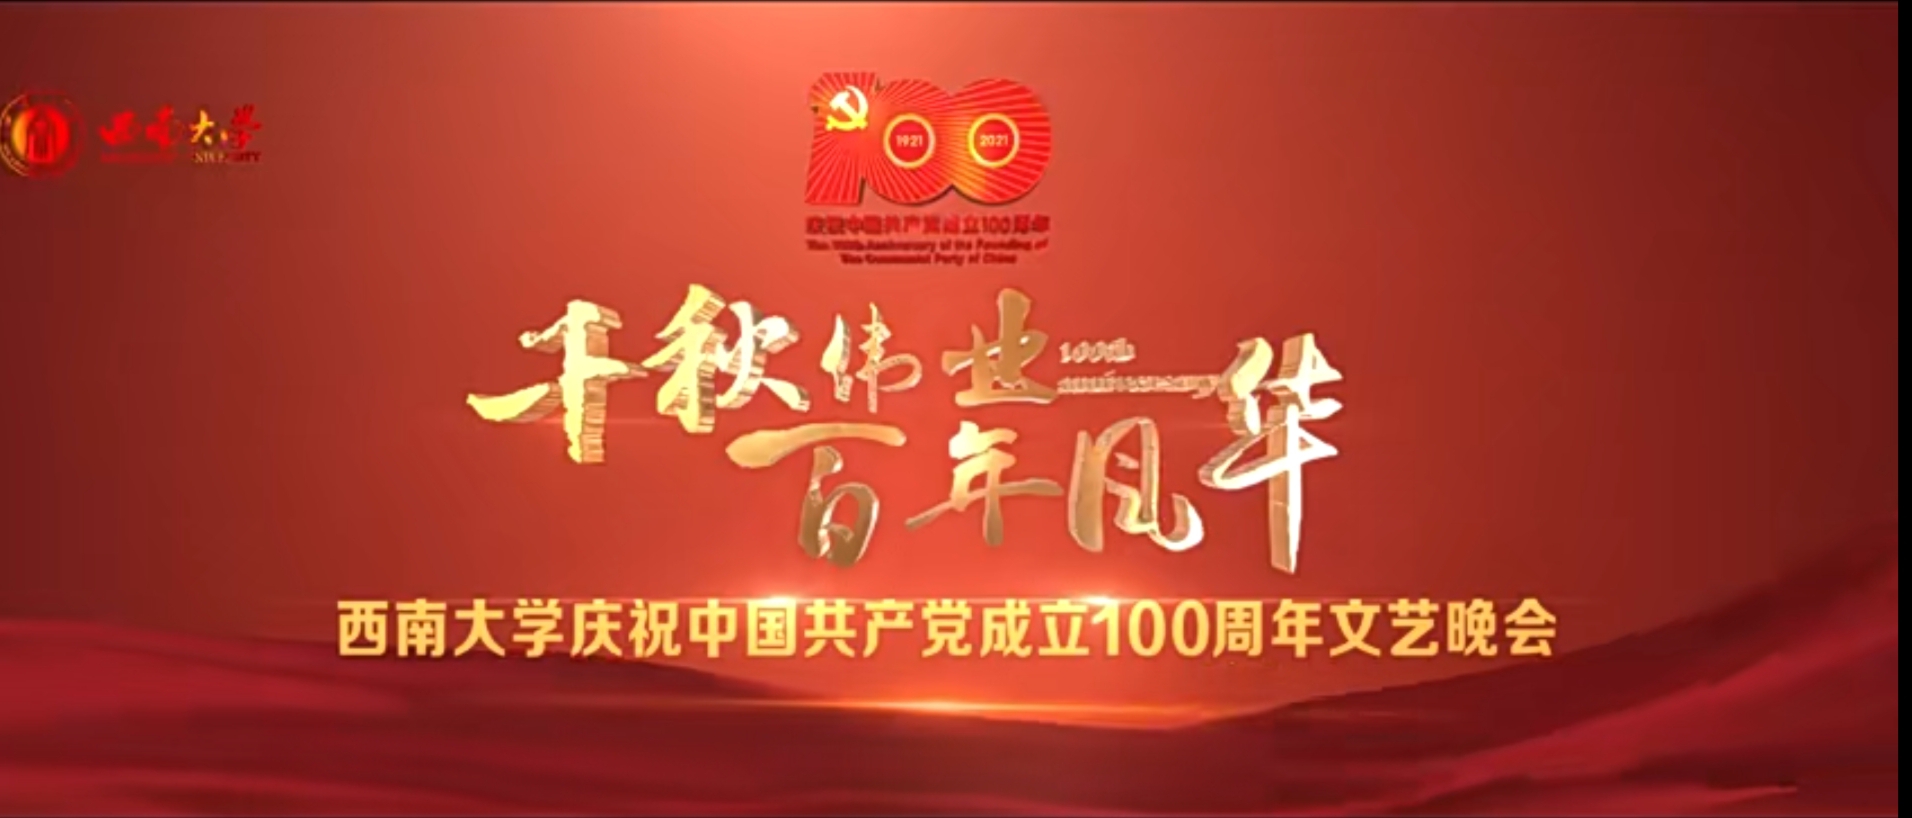 皇冠游戏在线平台庆祝建党100周年晚会直播回放（上）